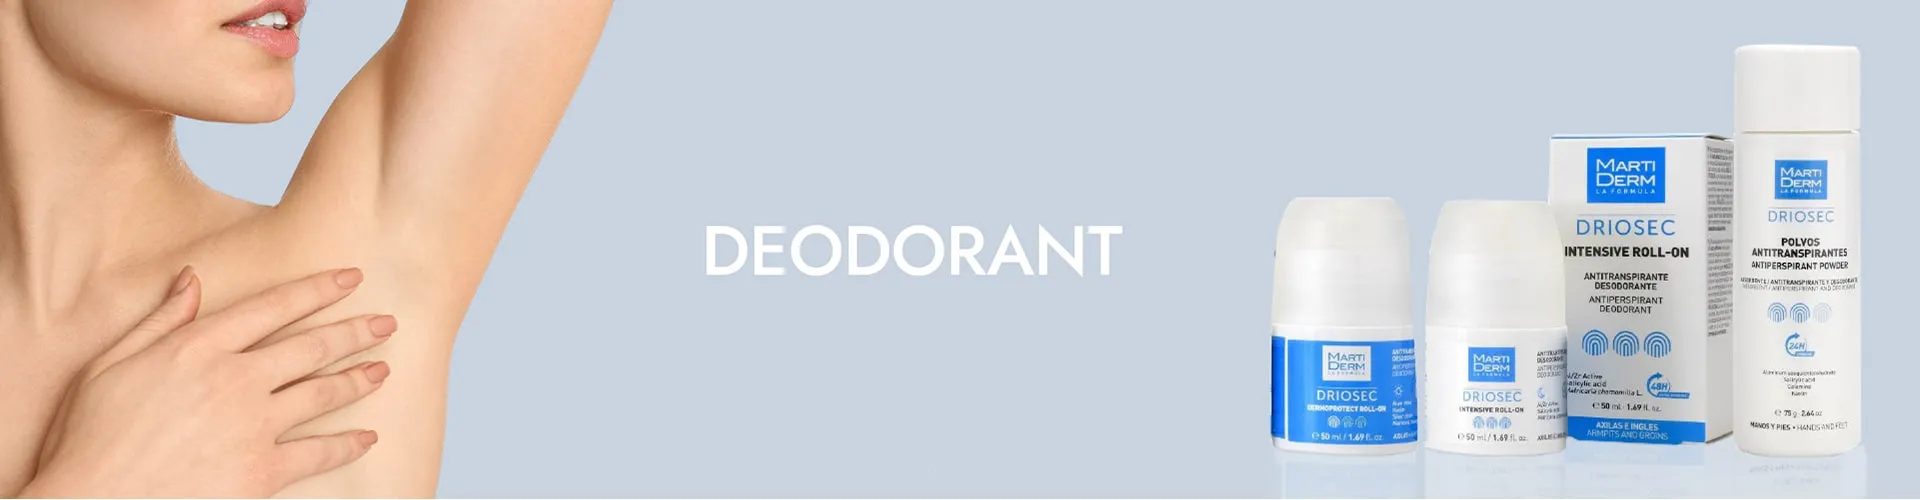 category_Deodorant-min